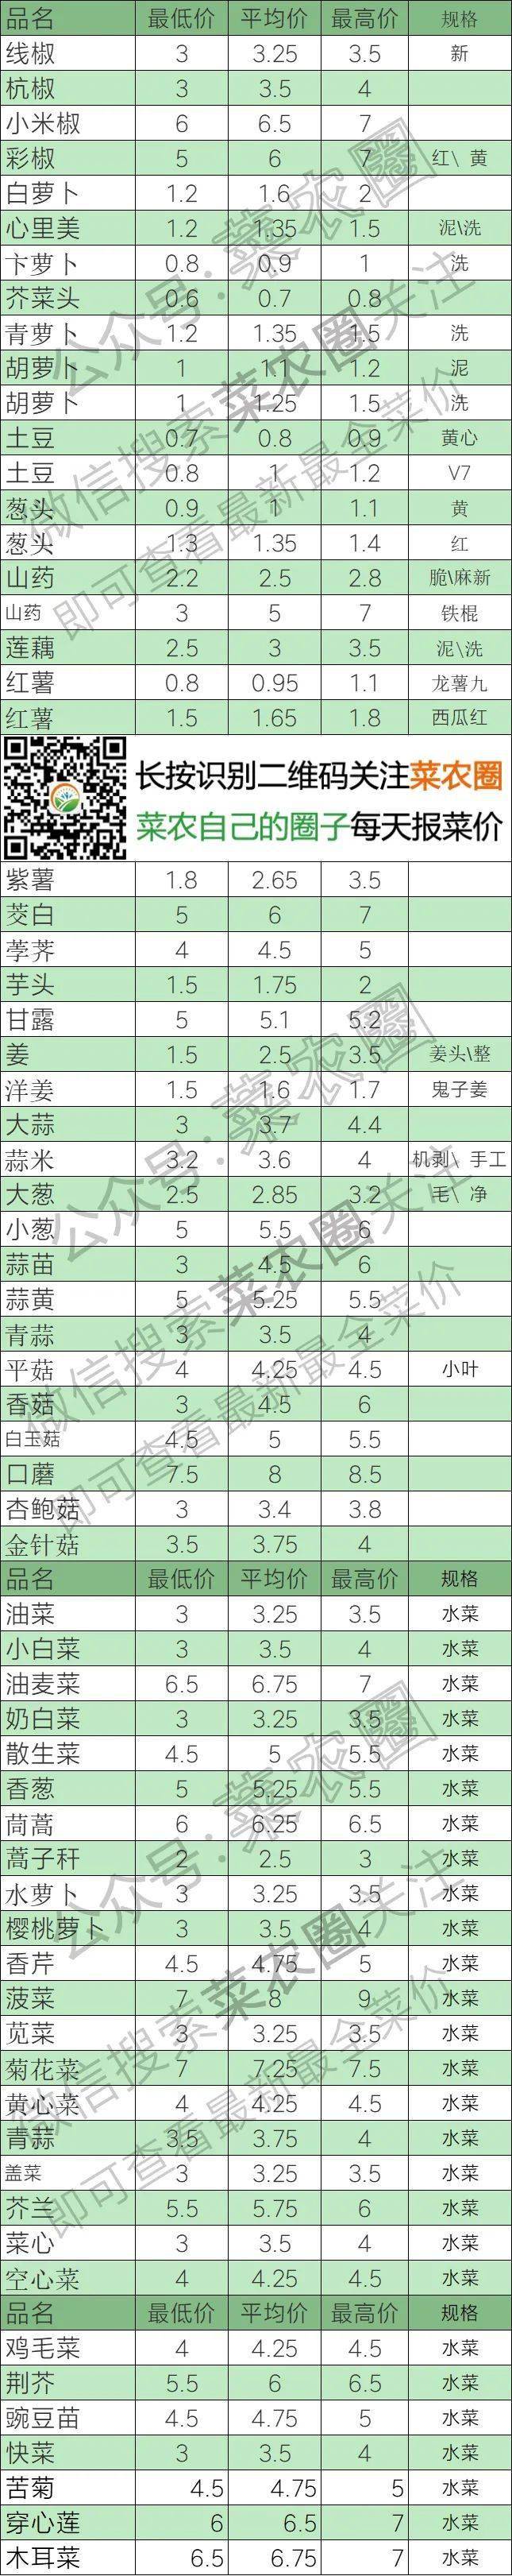 2021年10月27日北京新发地,山东寿光,云南,河北石家庄今日蔬菜价格行情一览表